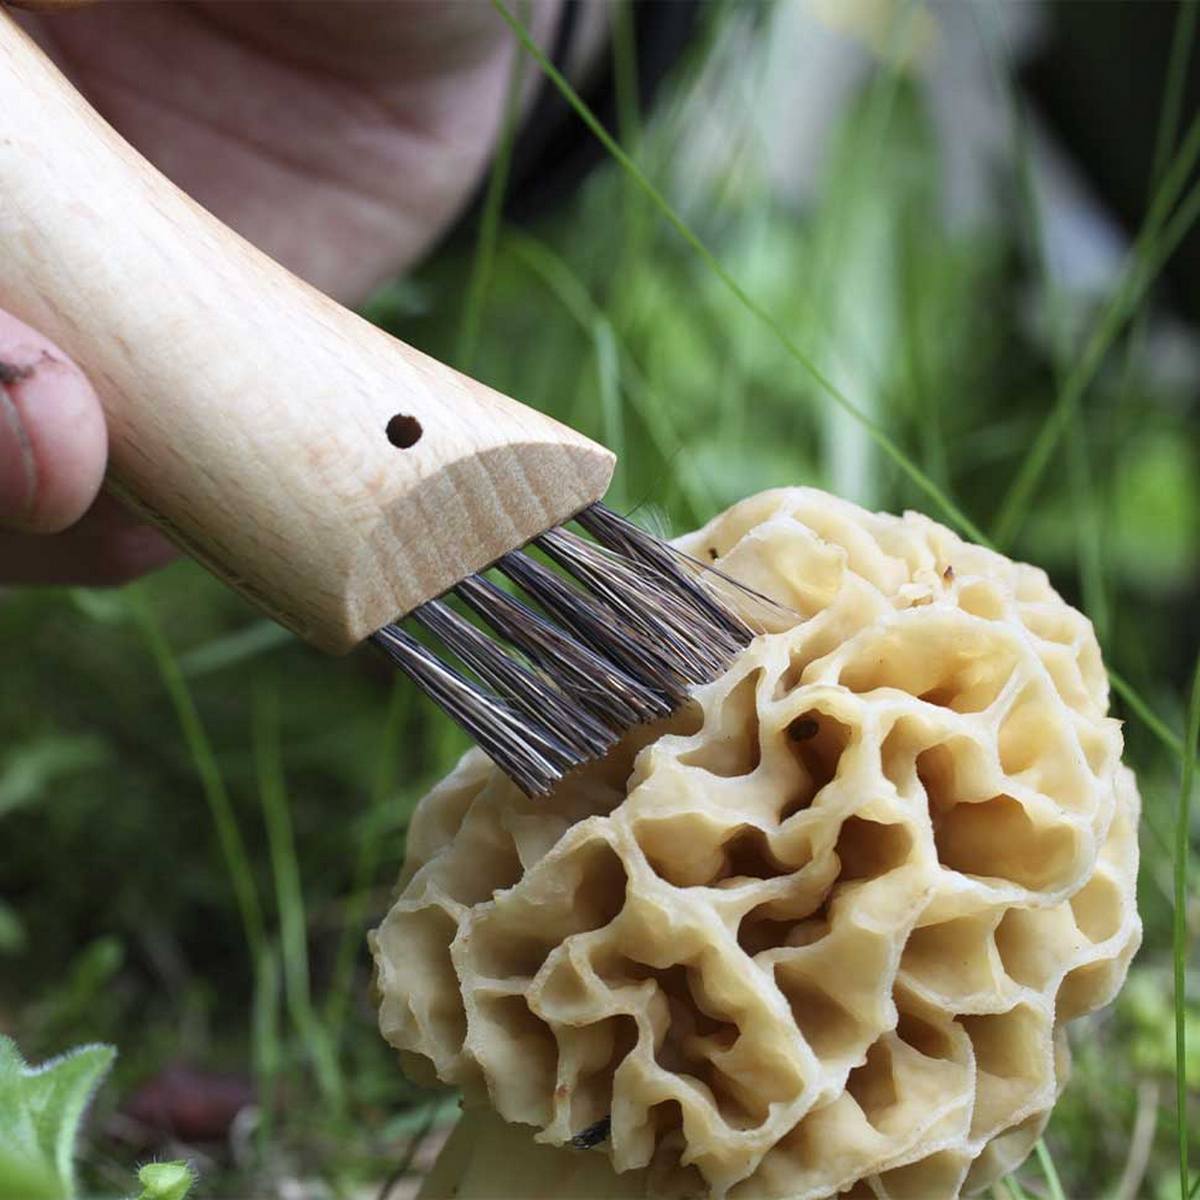 opinel couteau numero à champignon et son etui une idee cadeau chez ugo et lea (6)